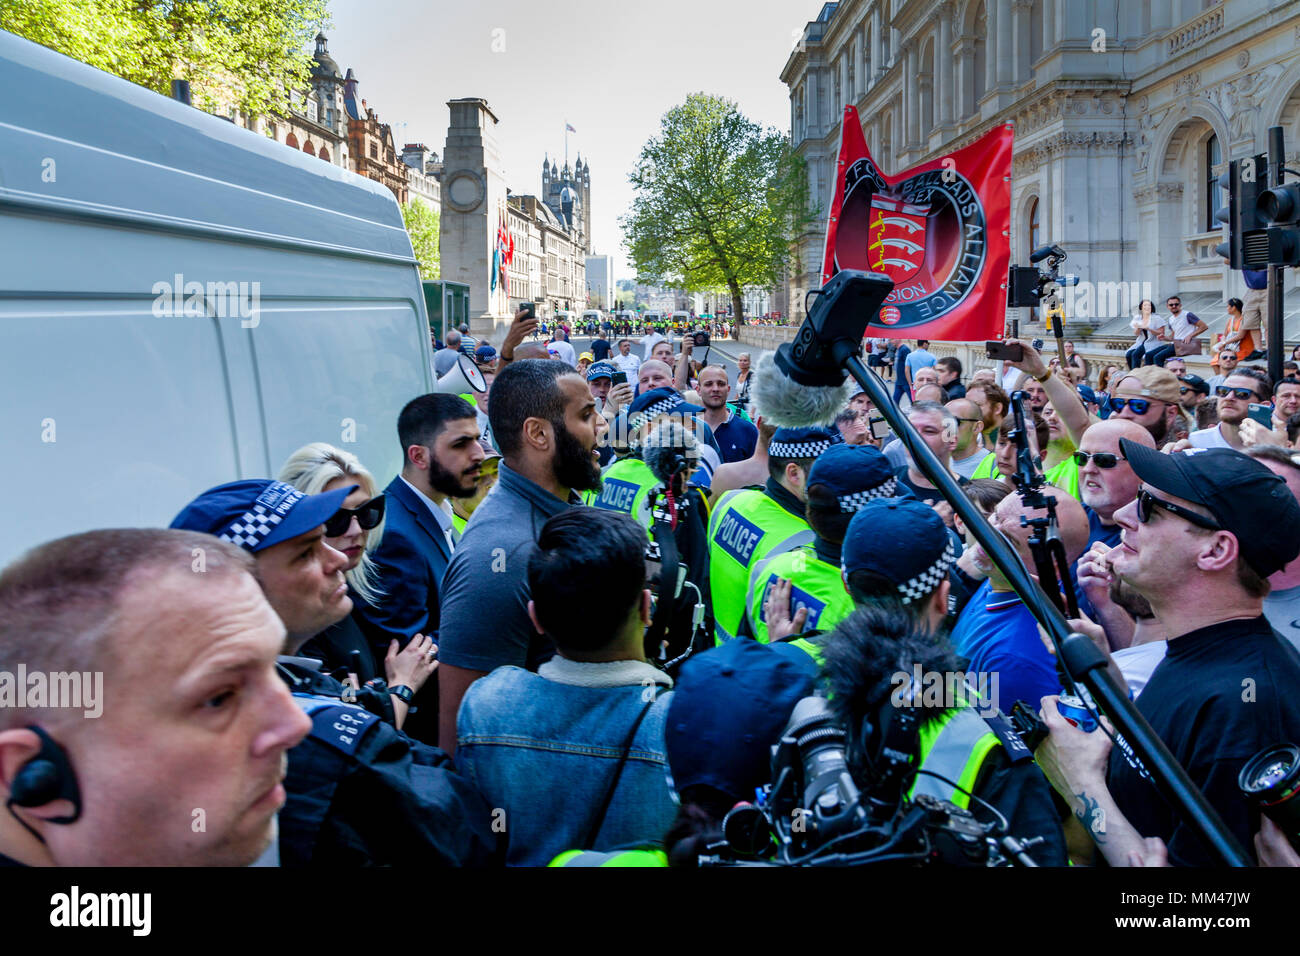 Ali Dawah und Muhammed Hijab sowohl Prominente muslimische Lautsprecher durch nicht Muslime während einer Freiheit der Rede Rally, London konfrontiert sind, Großbritannien Stockfoto